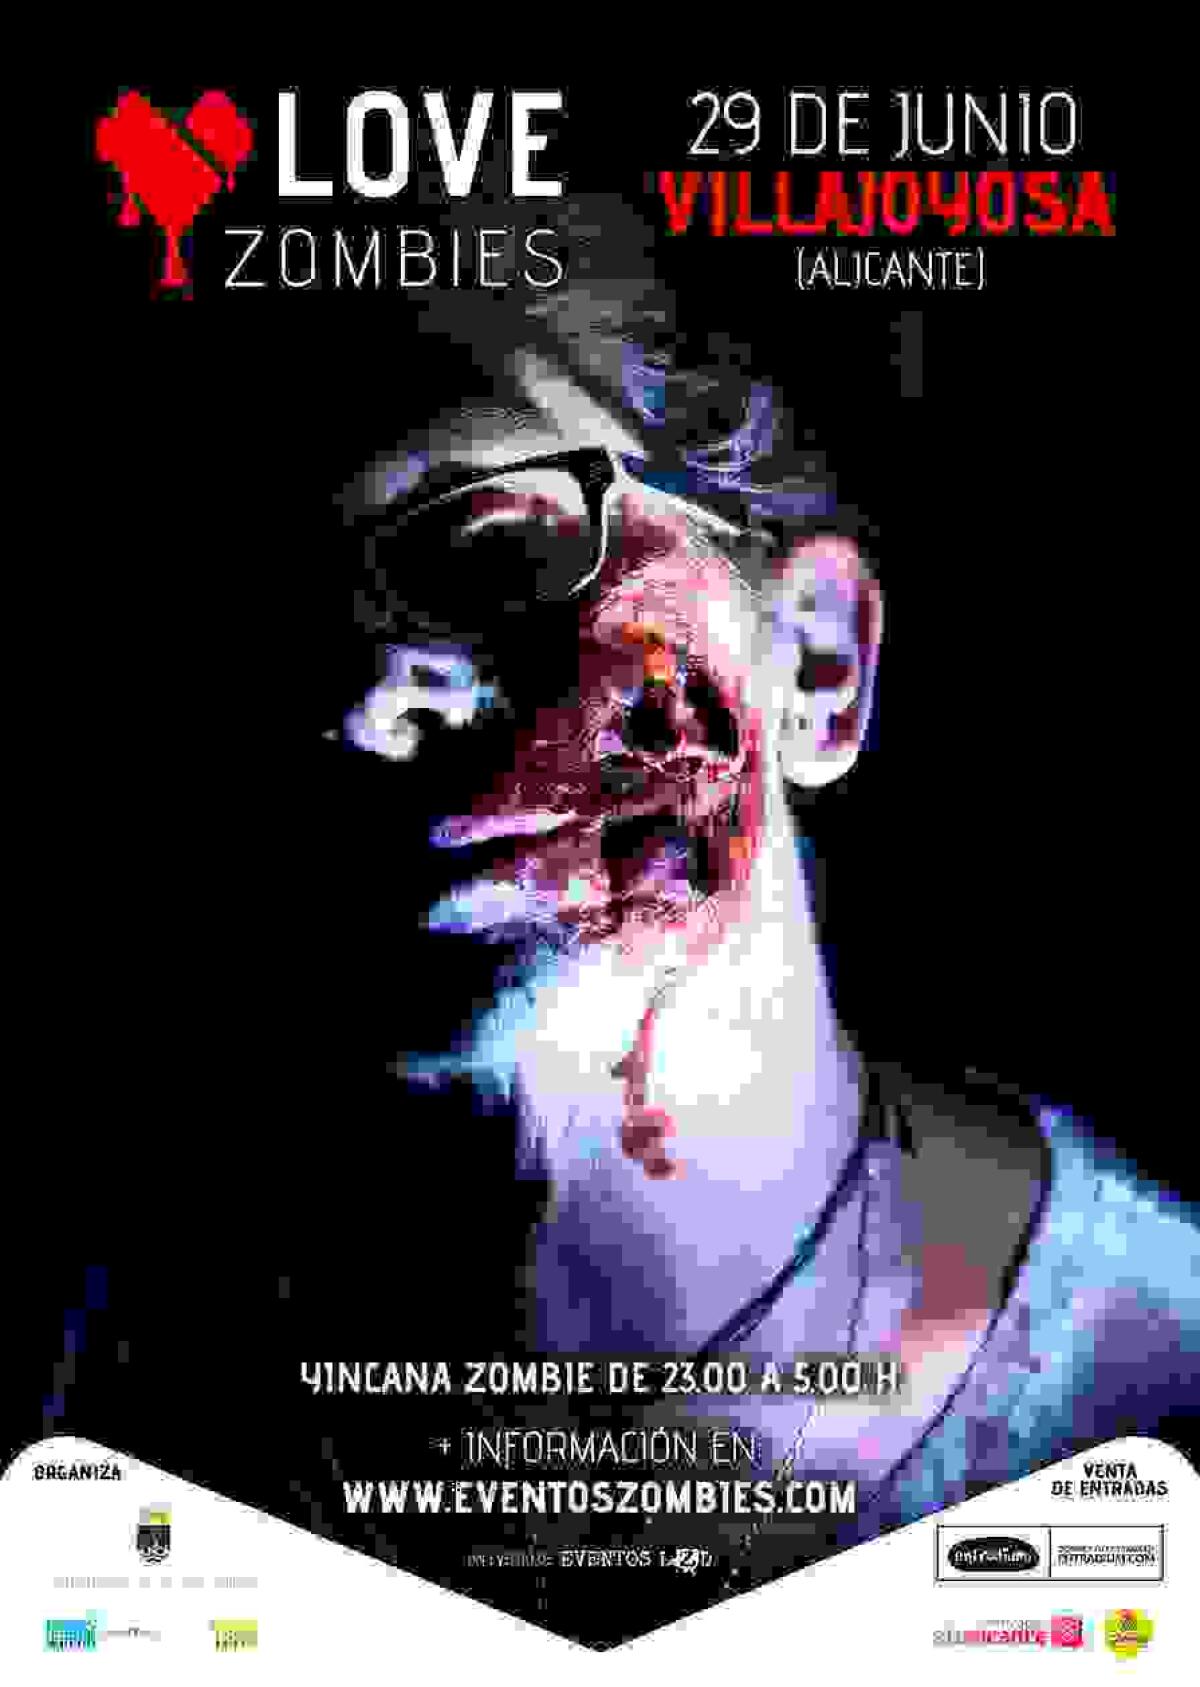 Una invasión zombie irrumpirá en las calles de la Vila Joiosa